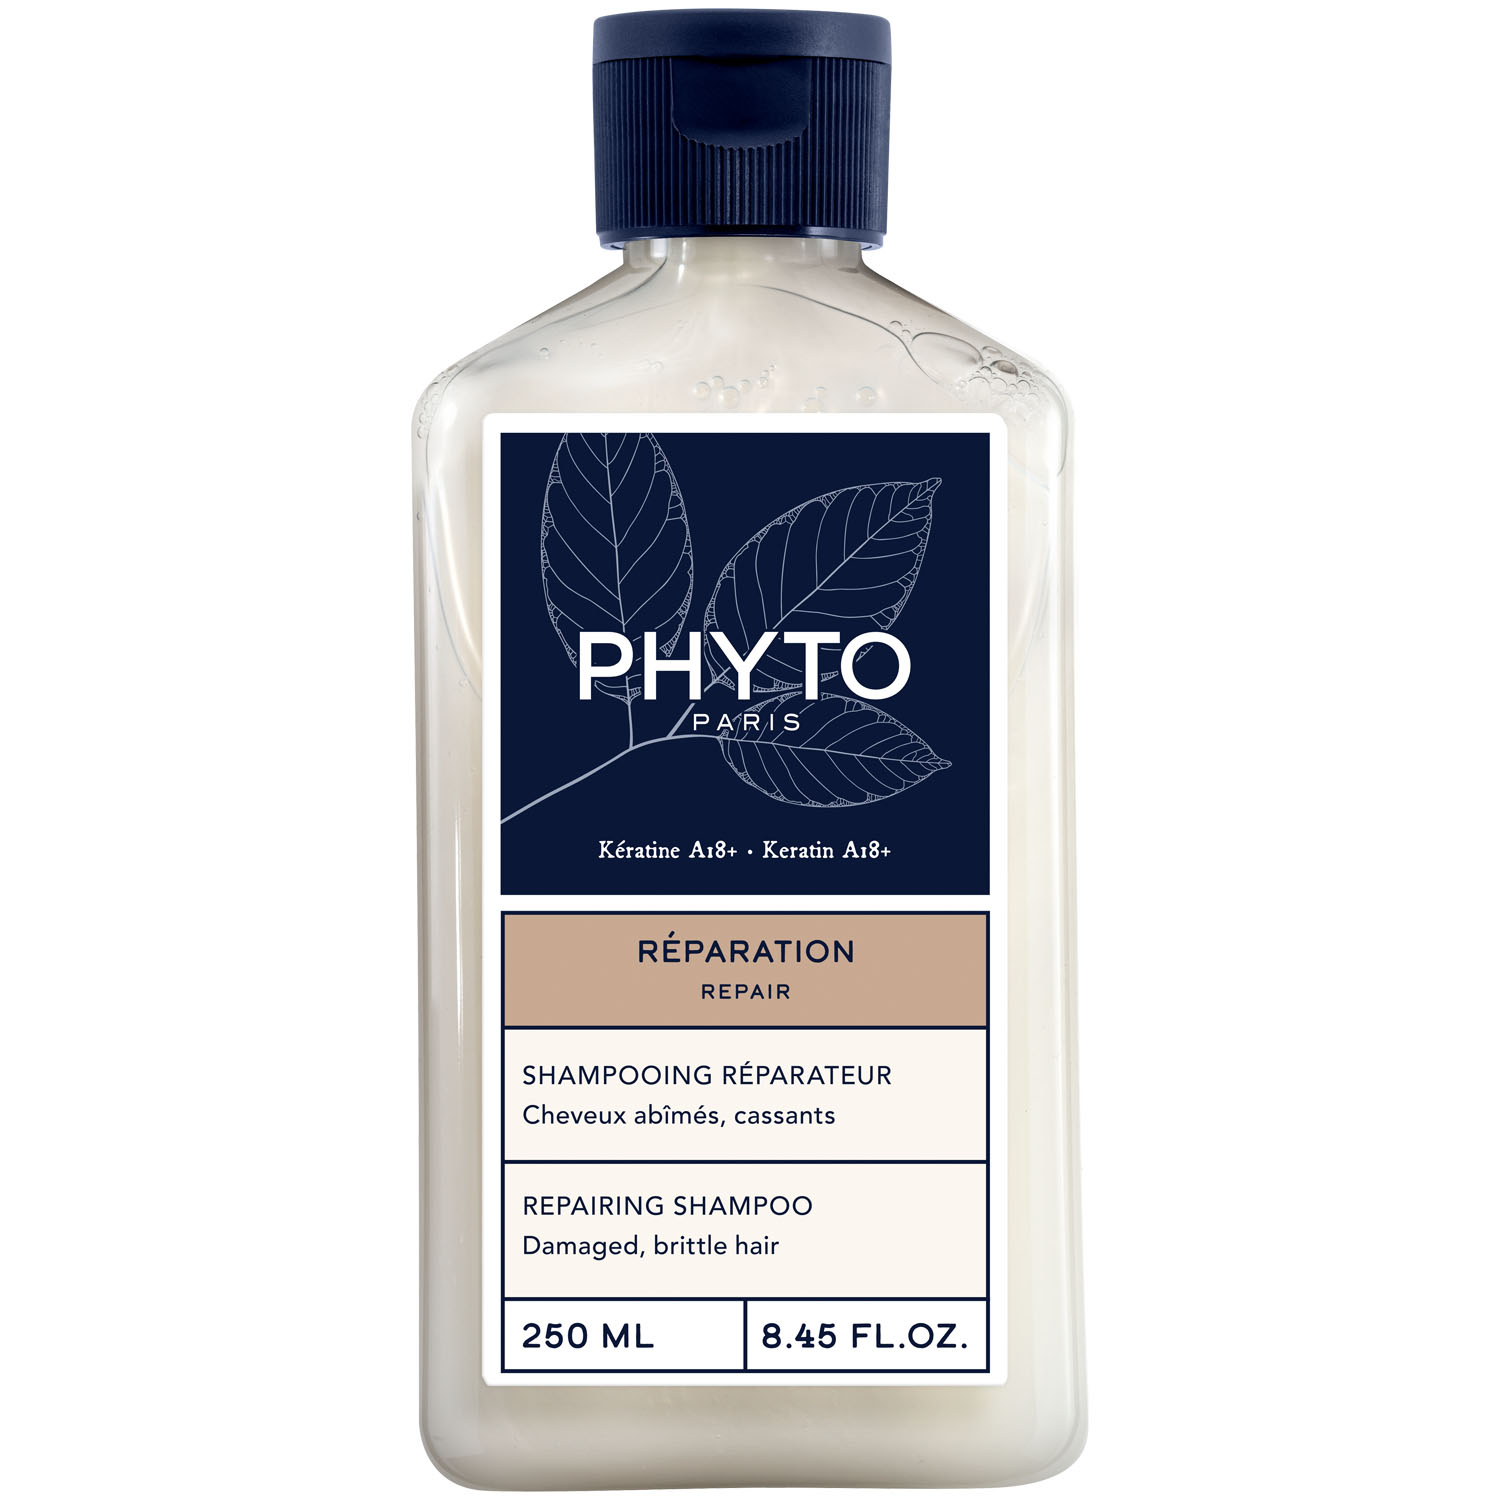 Phyto Восстанавливающий шампунь для волос, 250 мл (Phyto, Repair) цена и фото